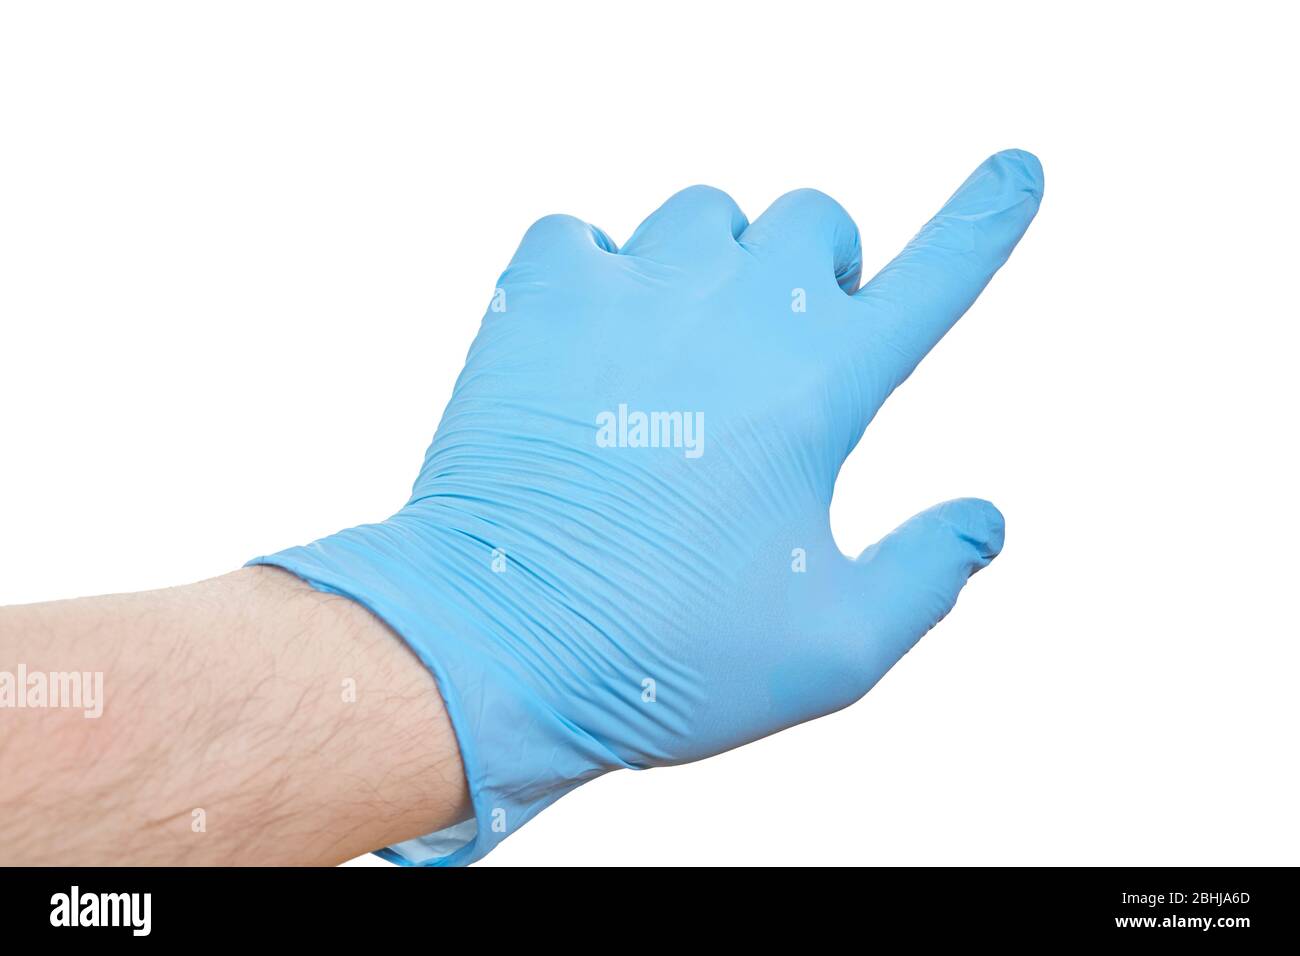 Die Hand legt blaue Gummihandschuhe auf und zeigt oder berührt sie. Isoliert auf weiß. Stockfoto